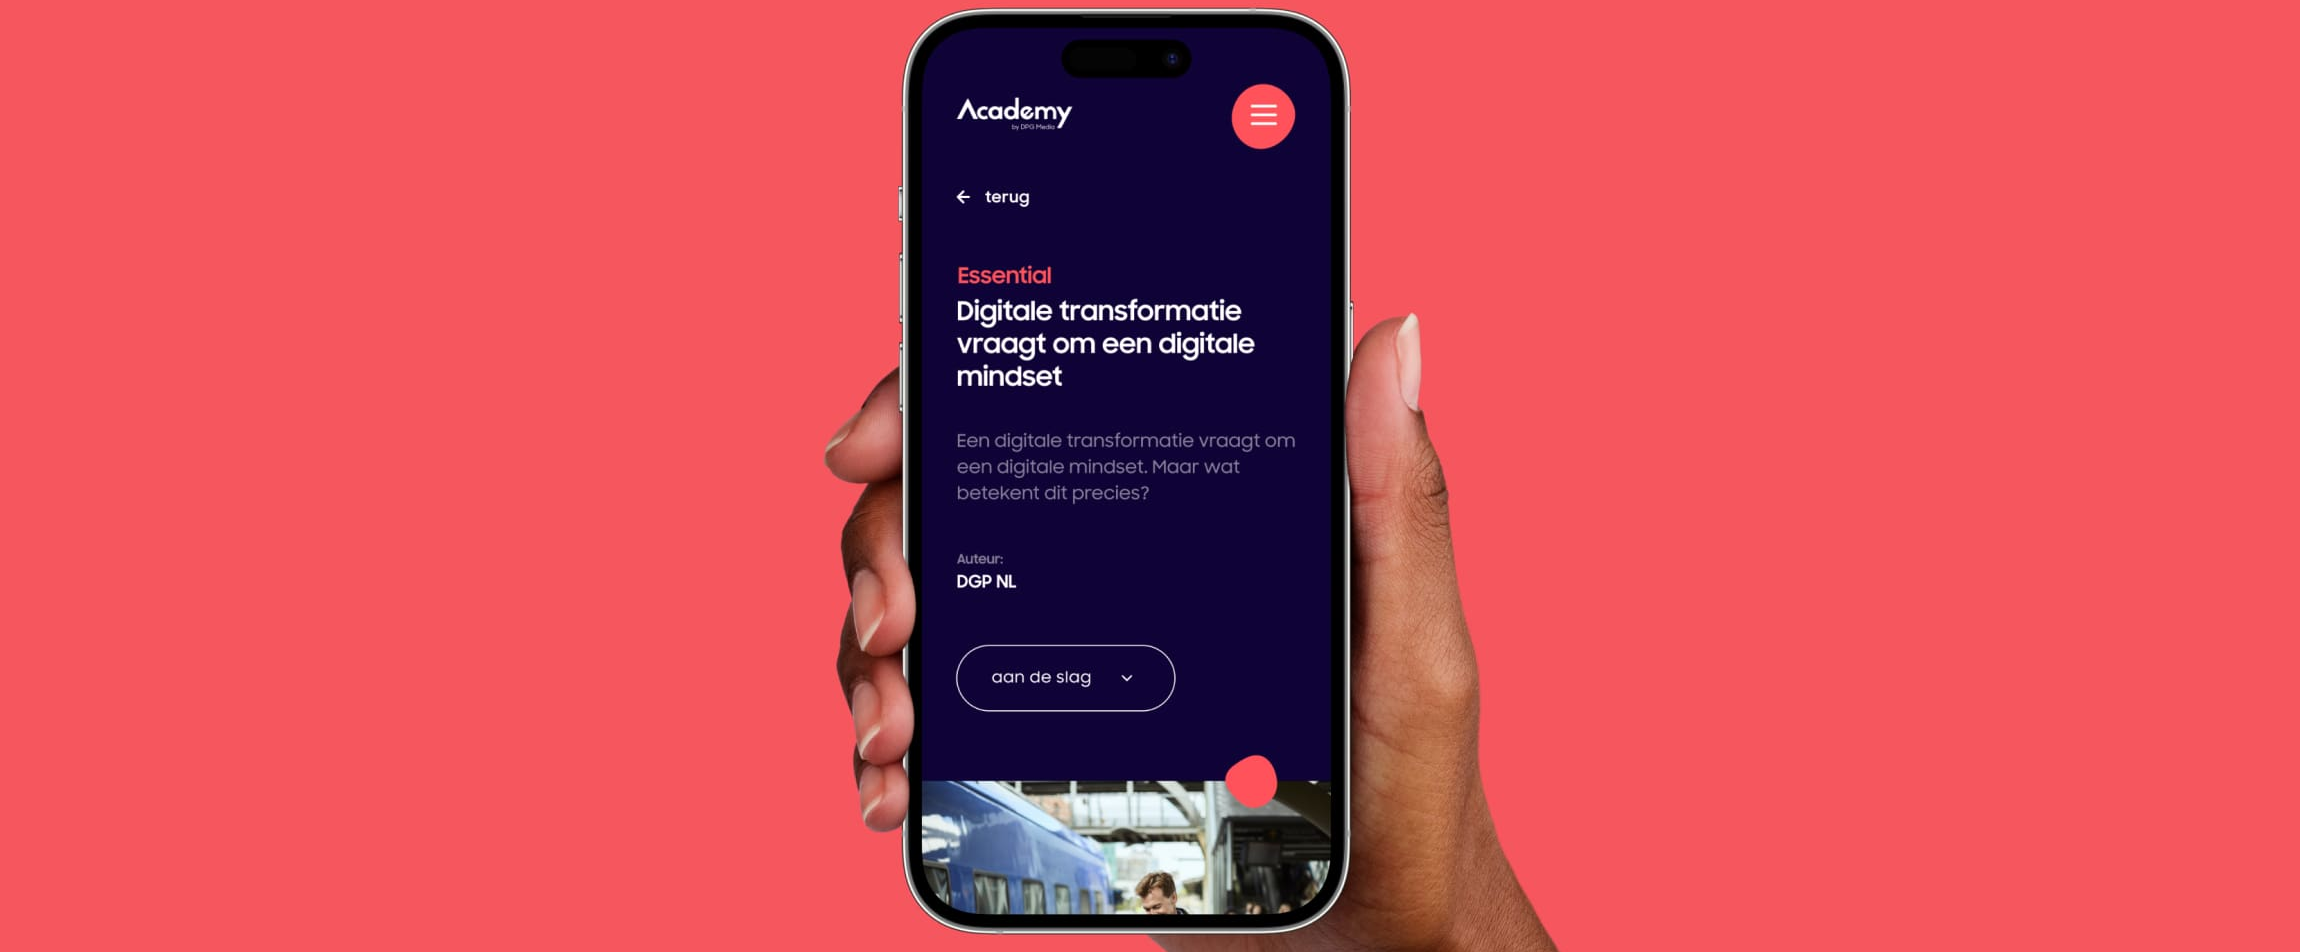 Een pagina van de DPG Academy getoond op een smartphone 